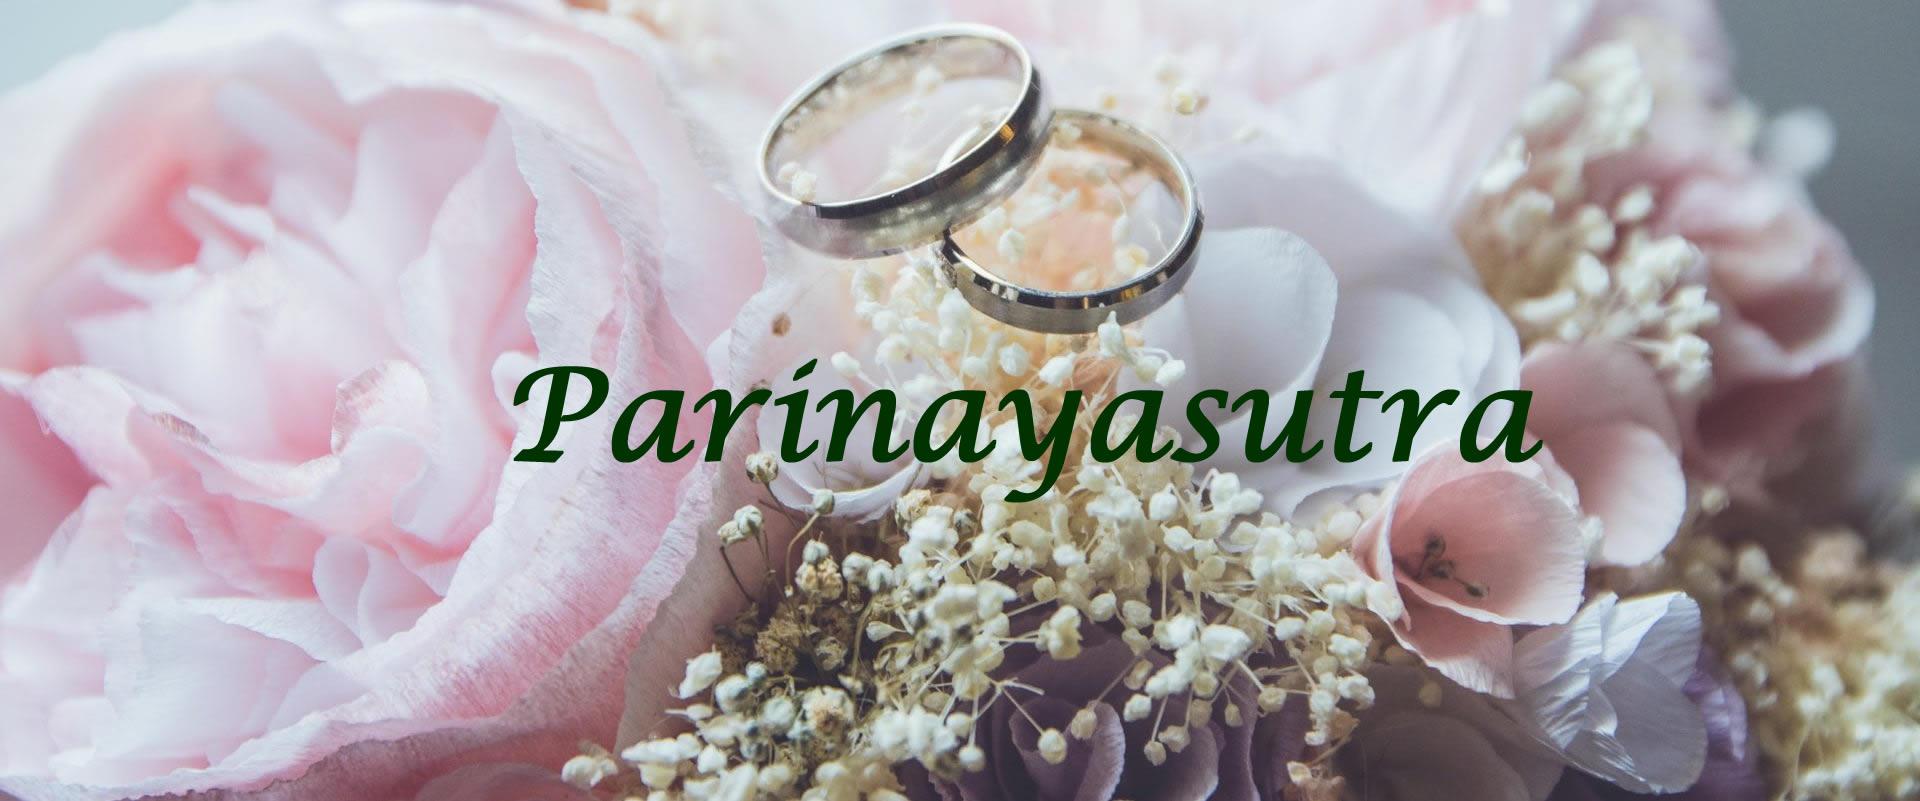 Parinayasutra